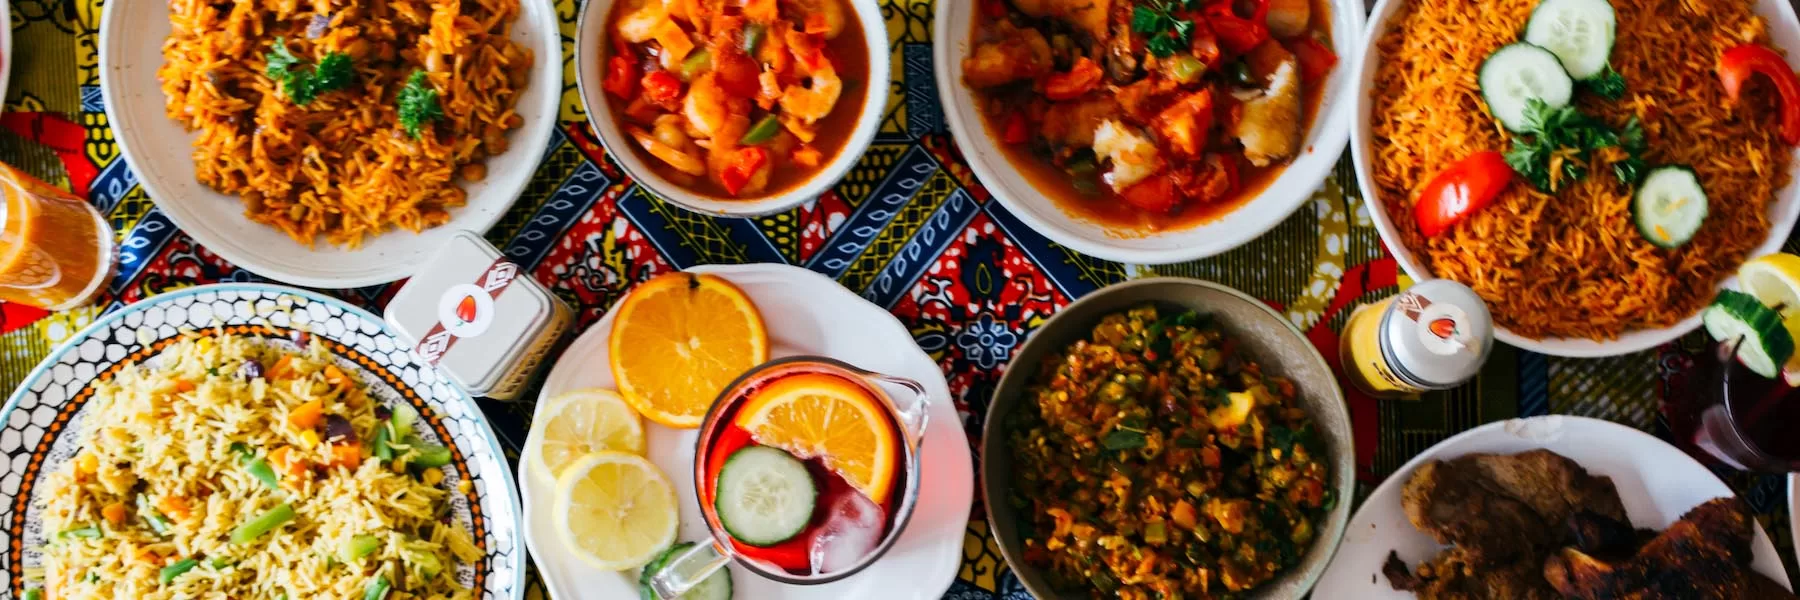 Unique foods to taste in Africa